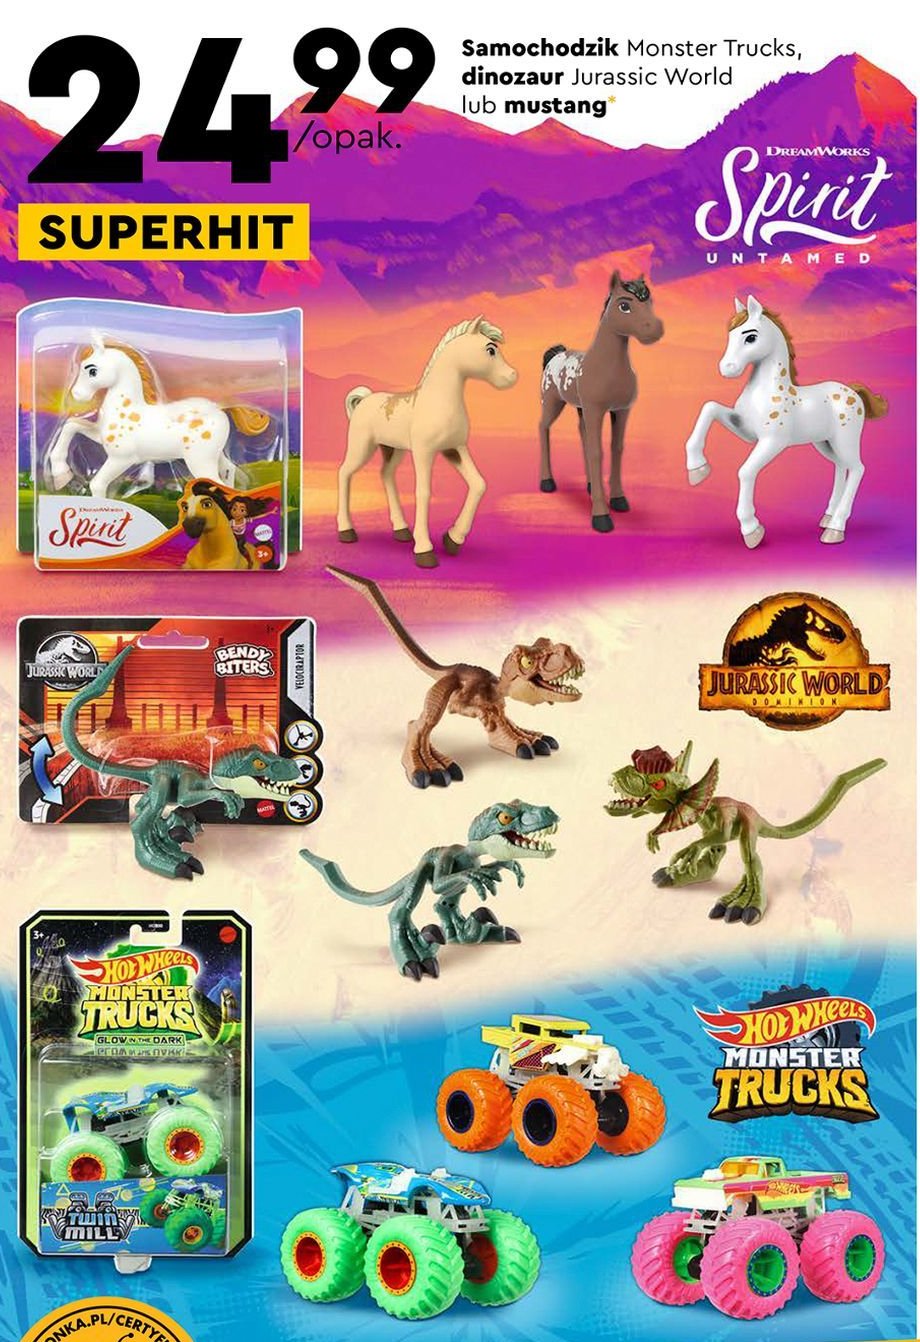 Dinozaur atakujący jurassic world Mattel promocja